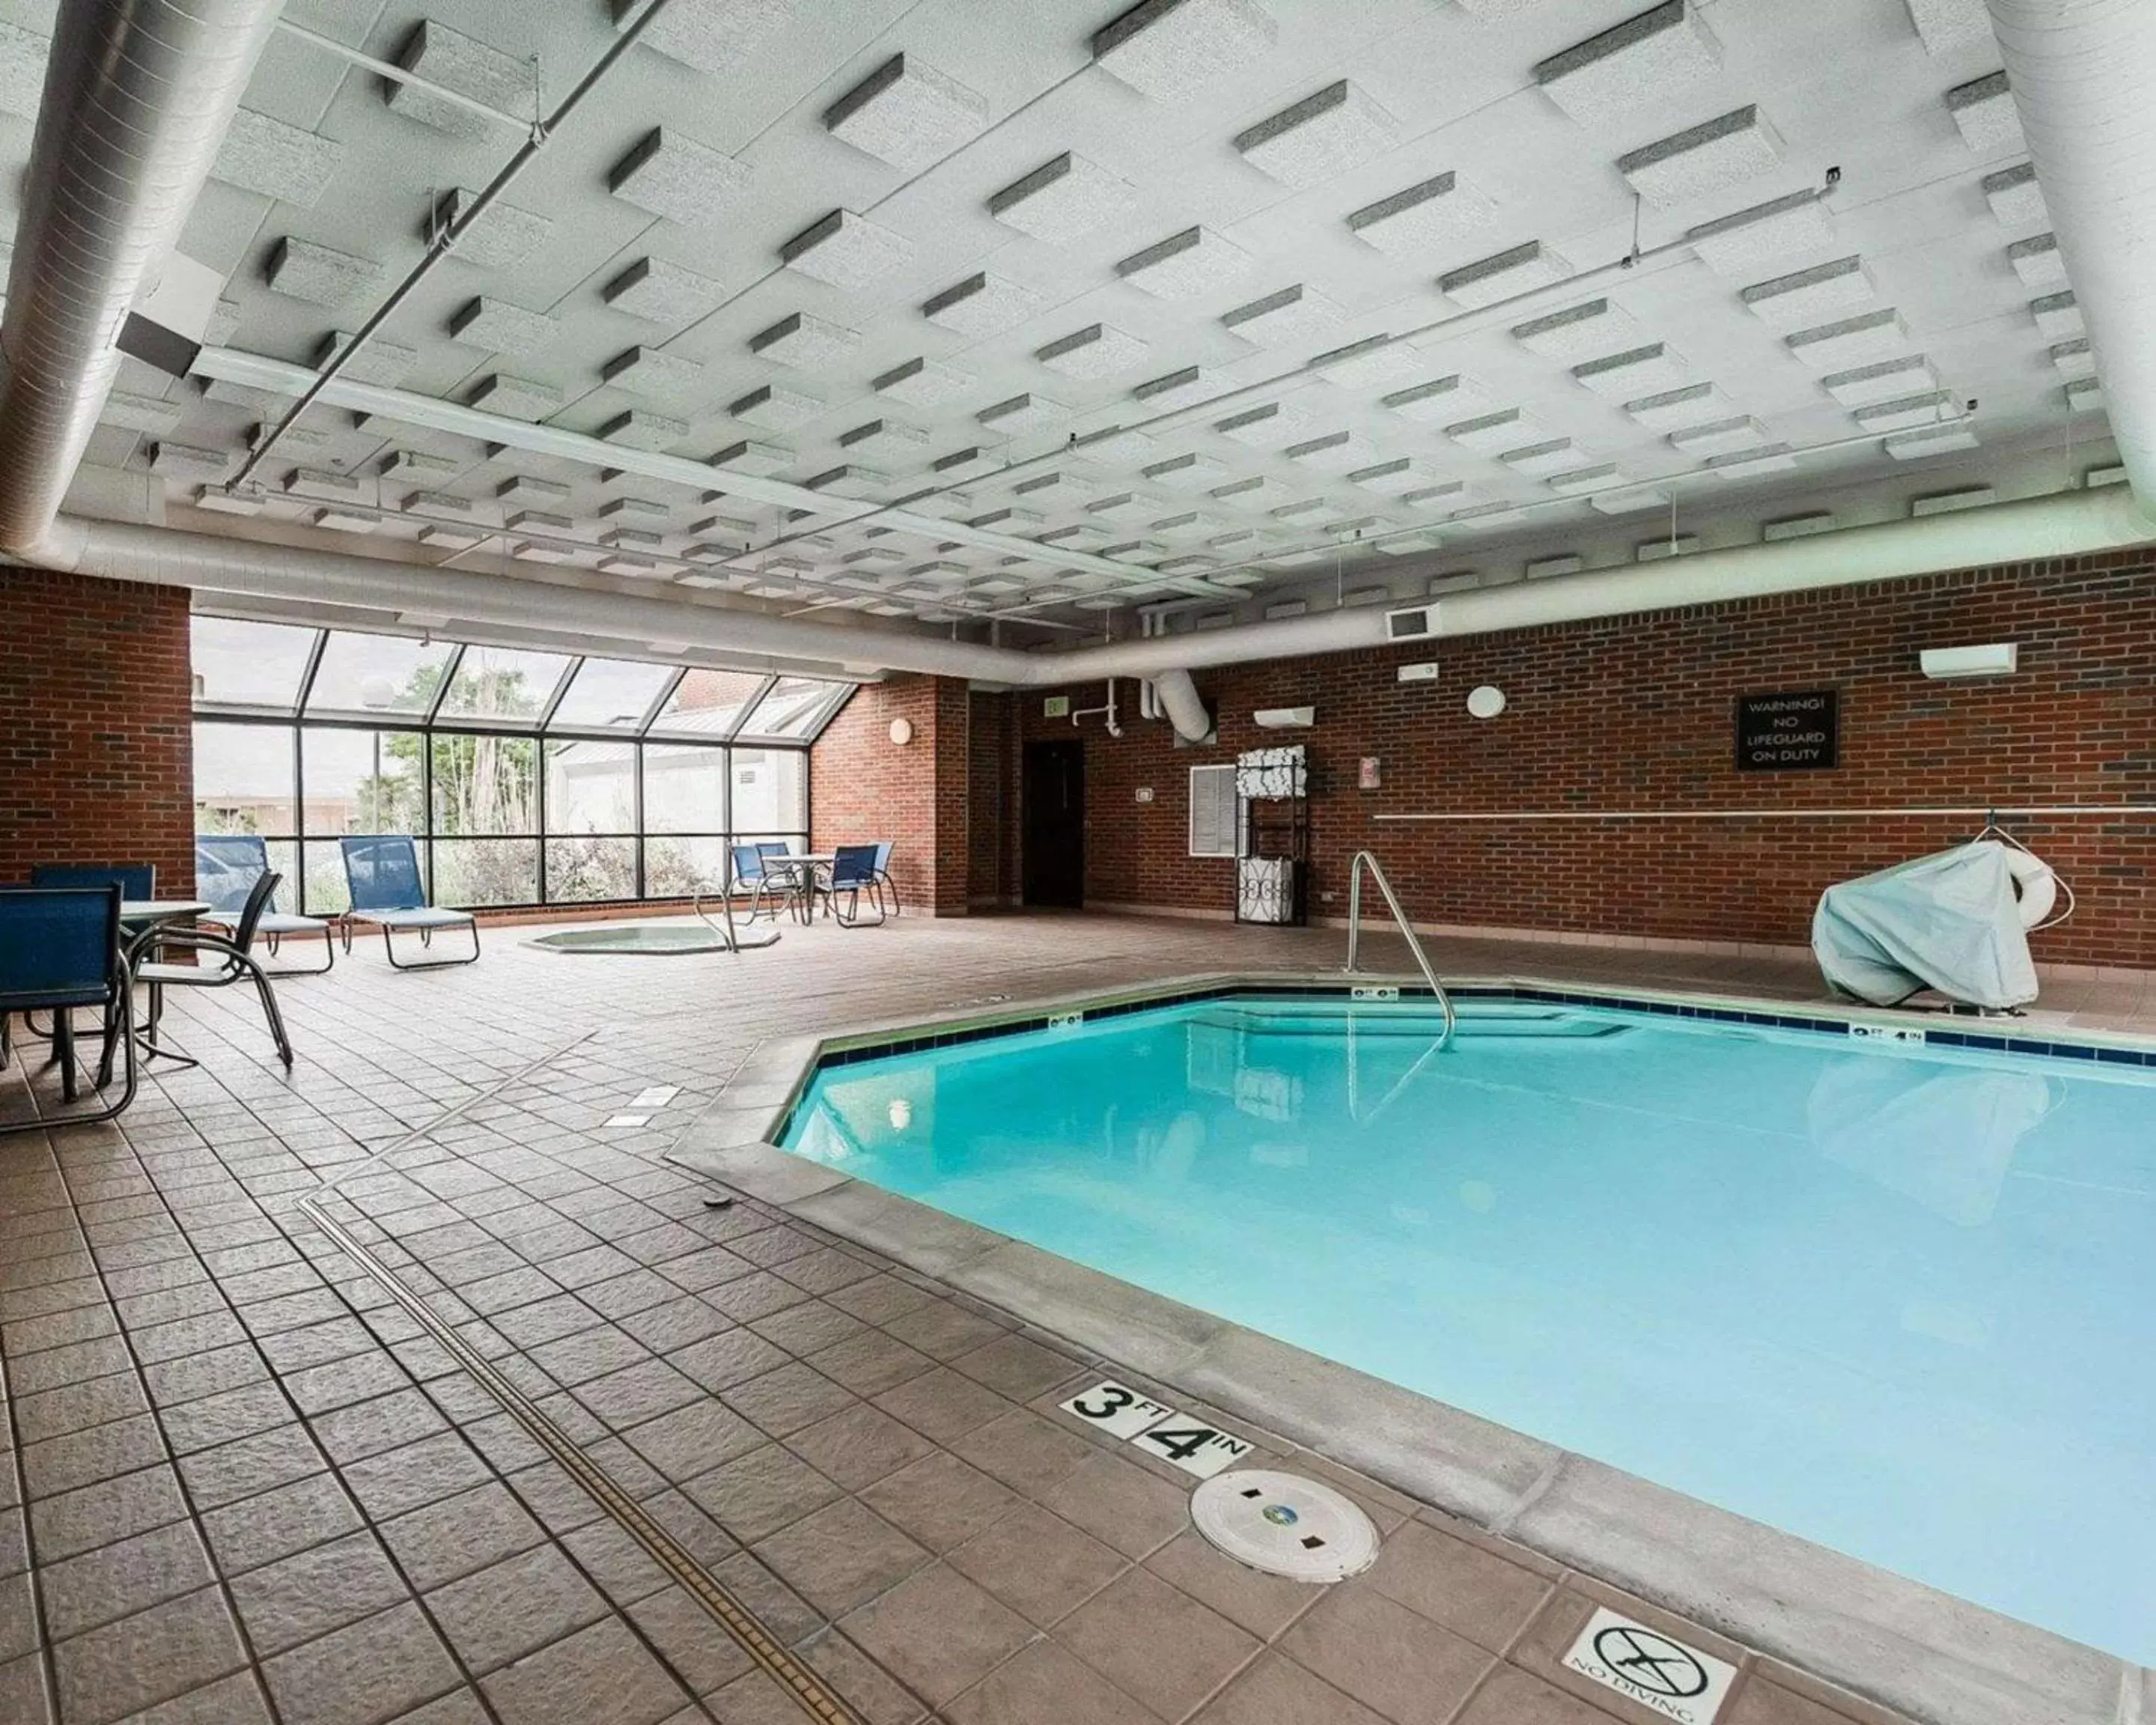 On site, Swimming Pool in Comfort Inn Denver East